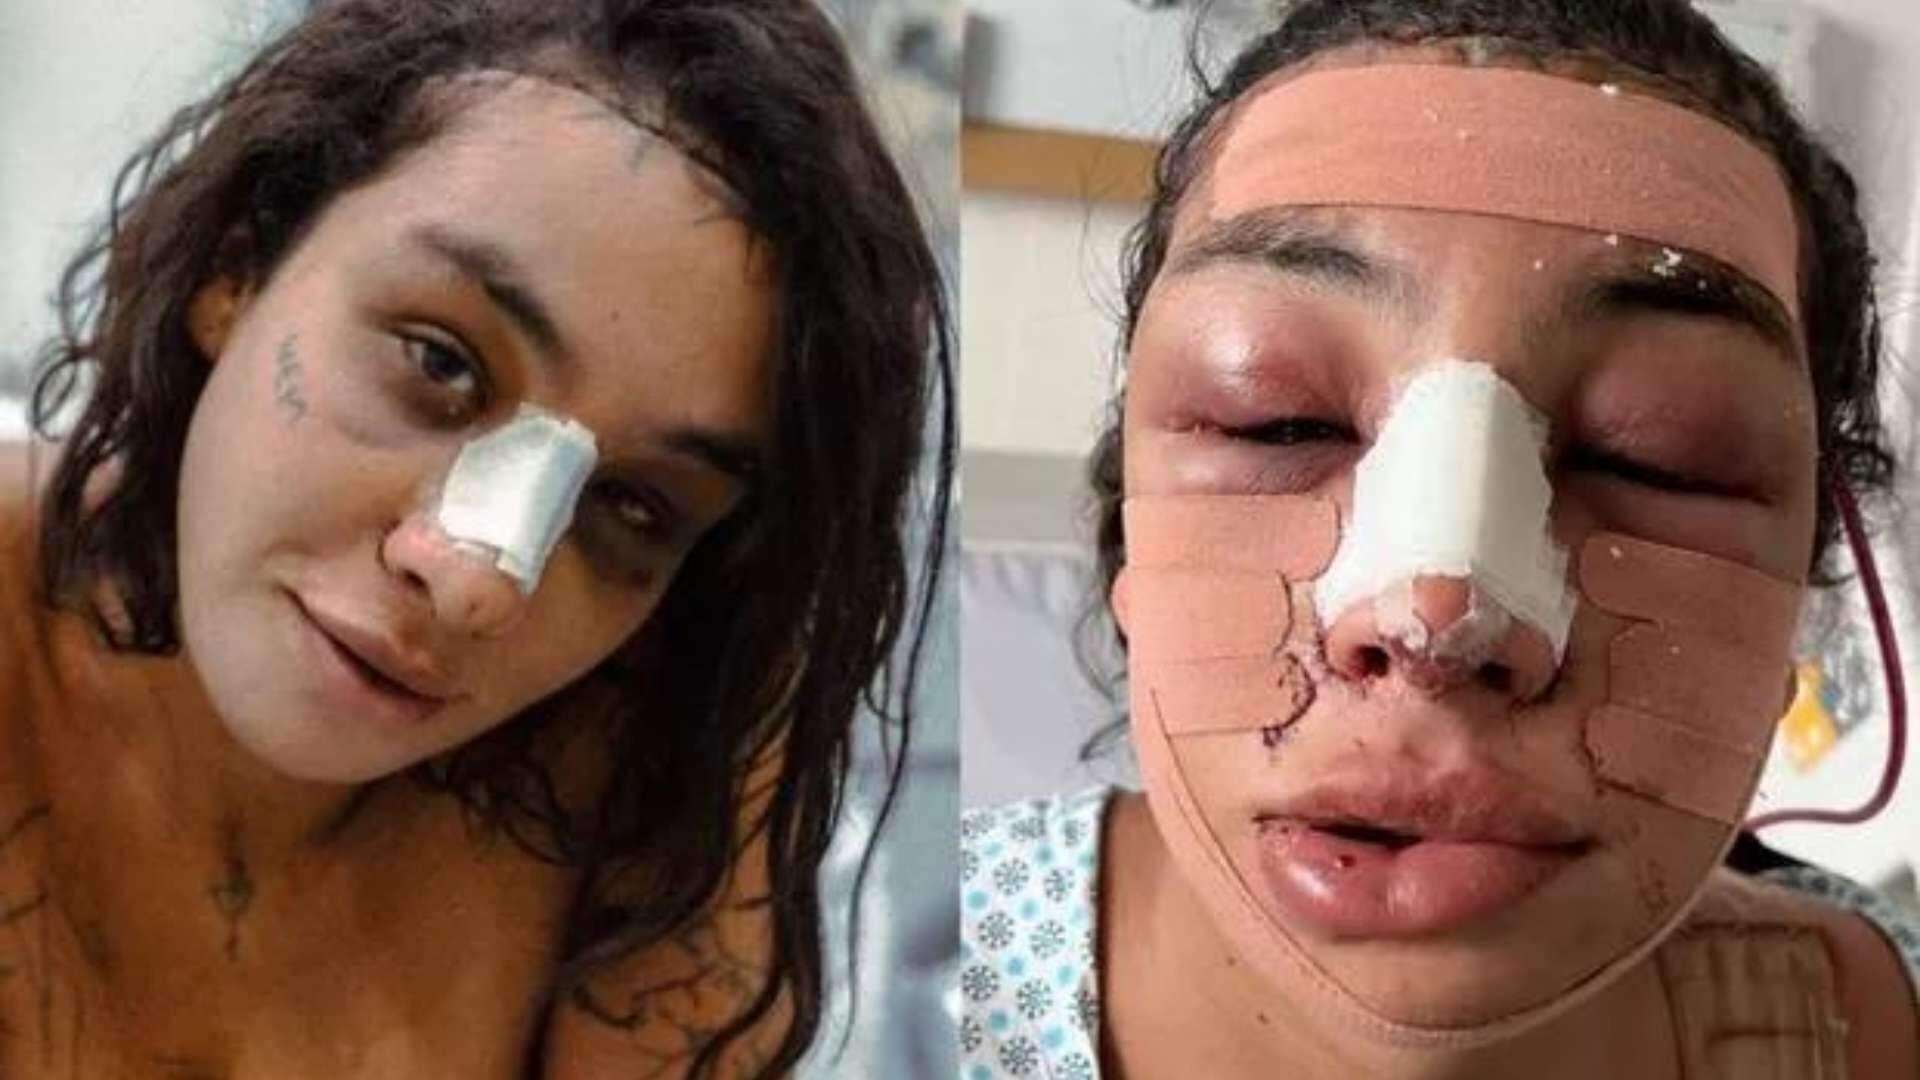 Linn da Quebrada choca com aparência após cirurgia plástica e explica o motivo: “Renascimento” - Metropolitana FM